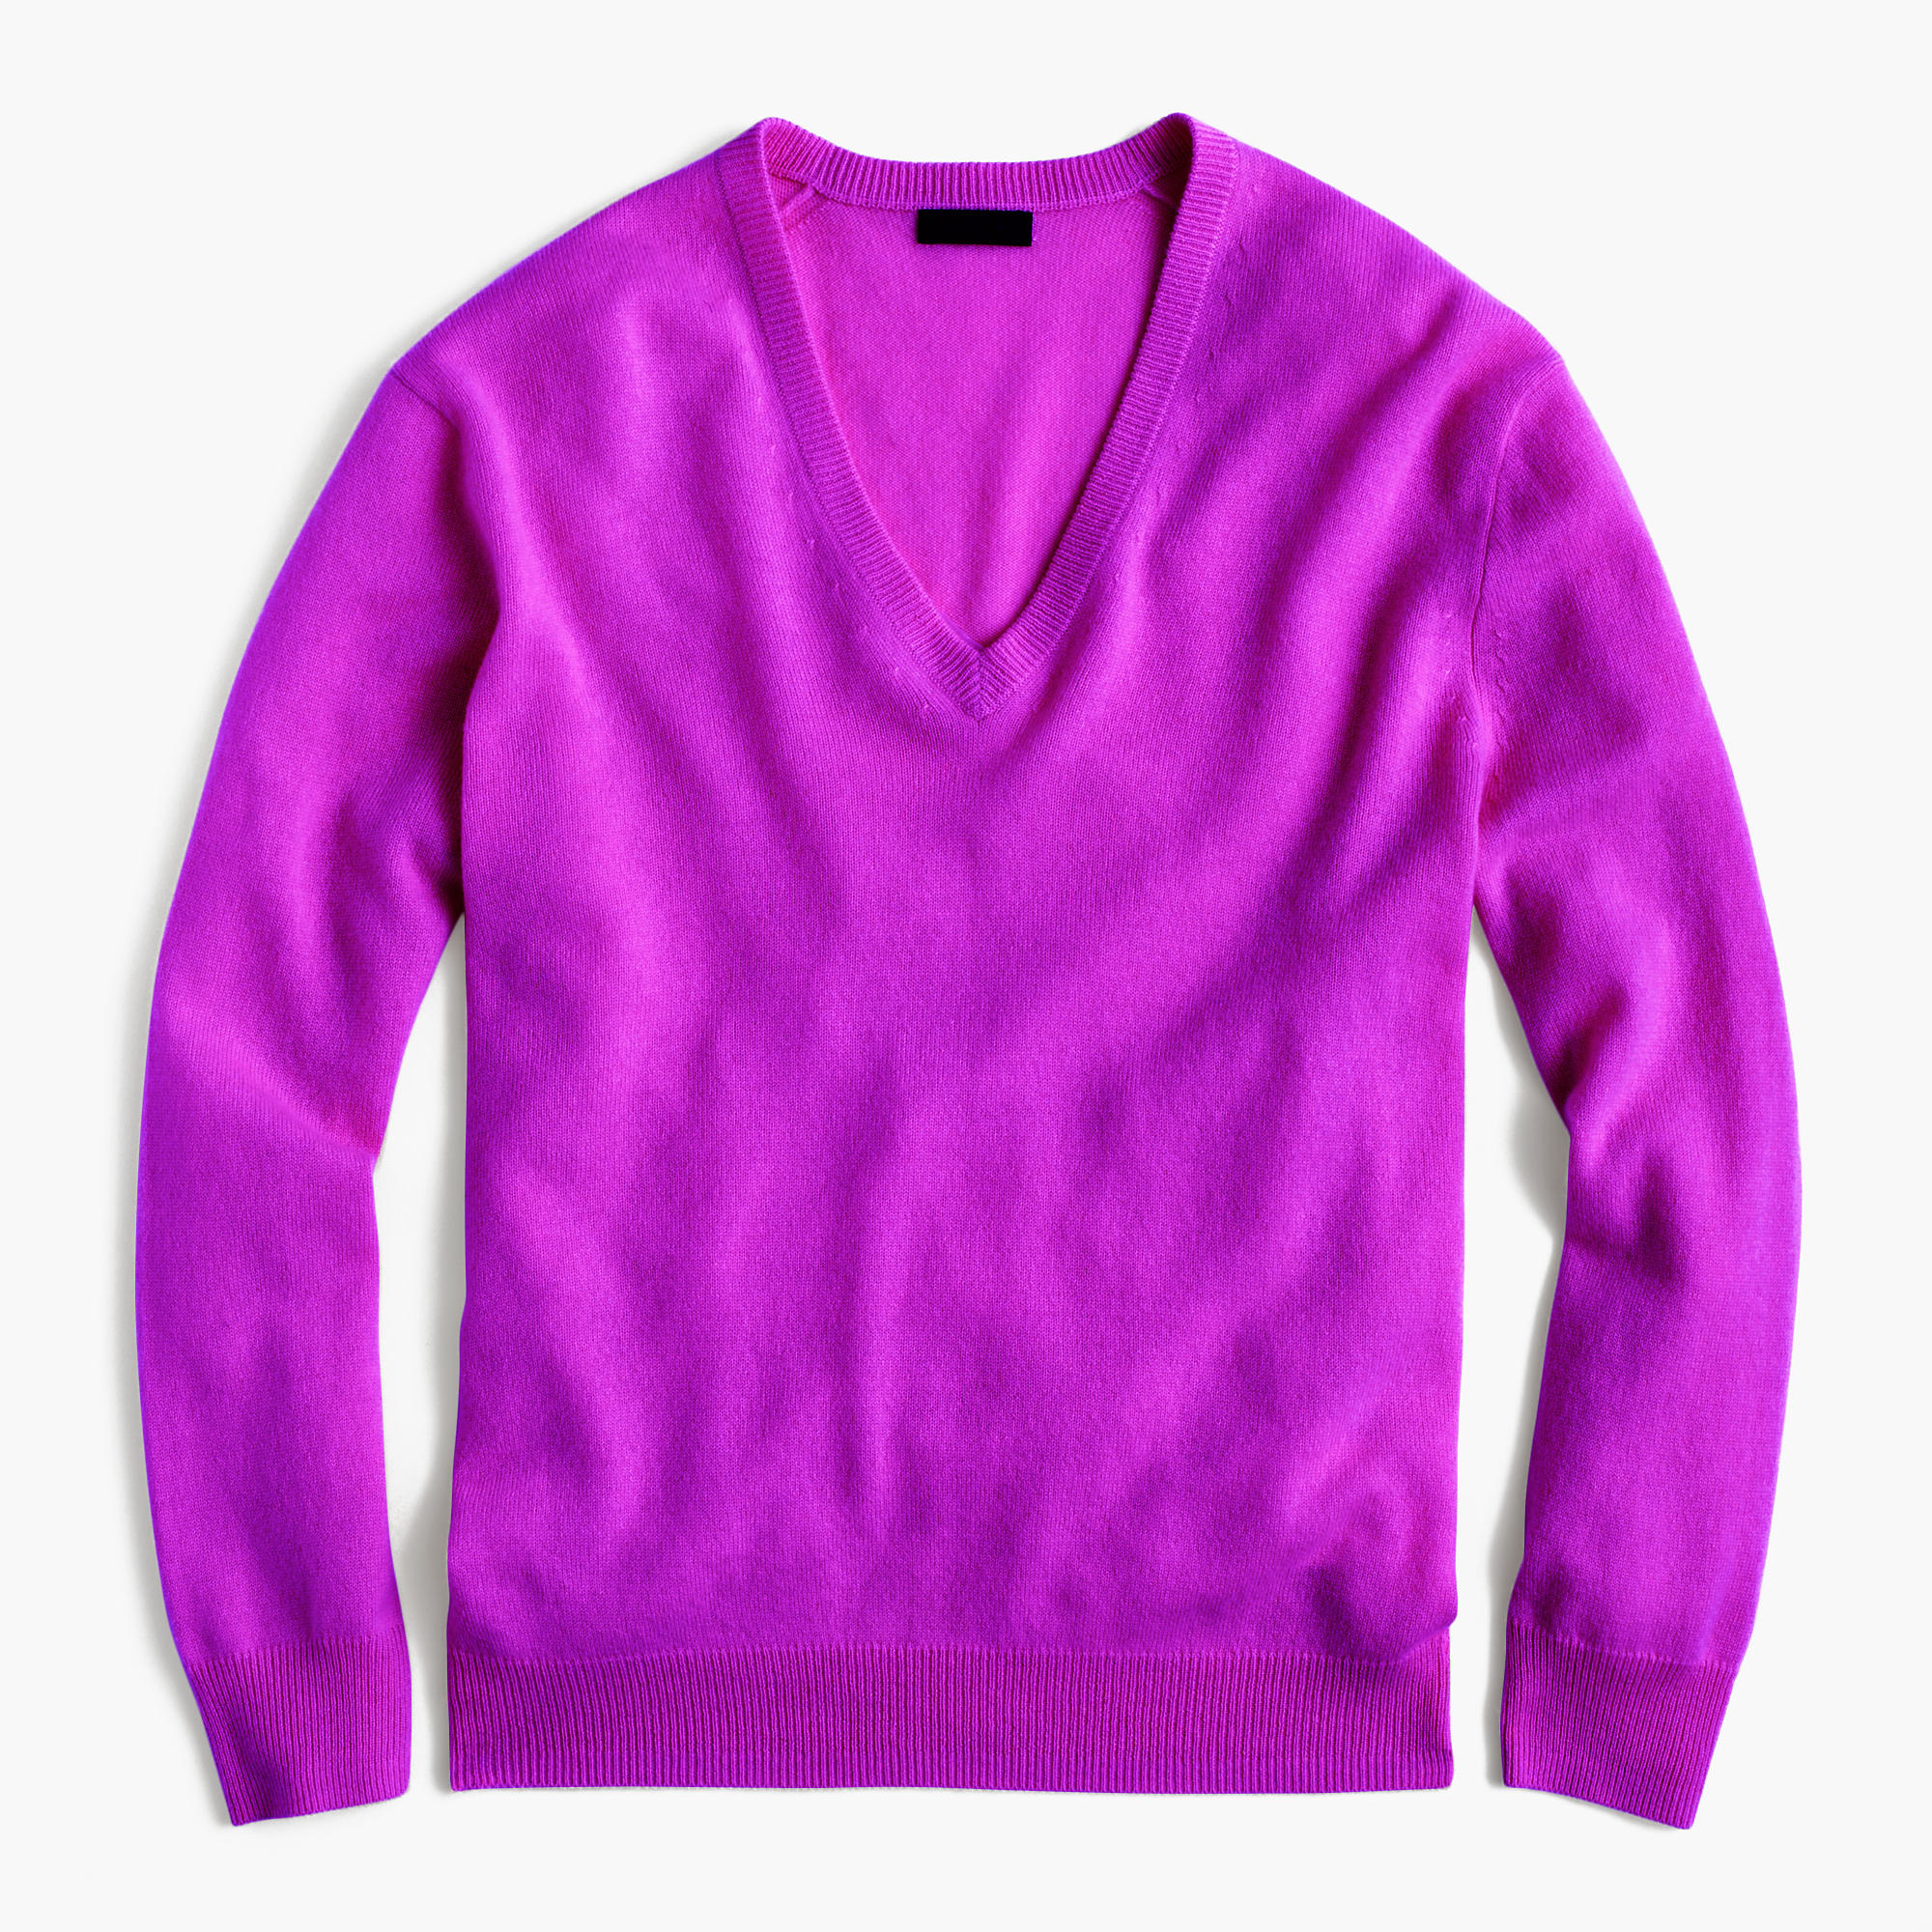 Purple crew neck sweater